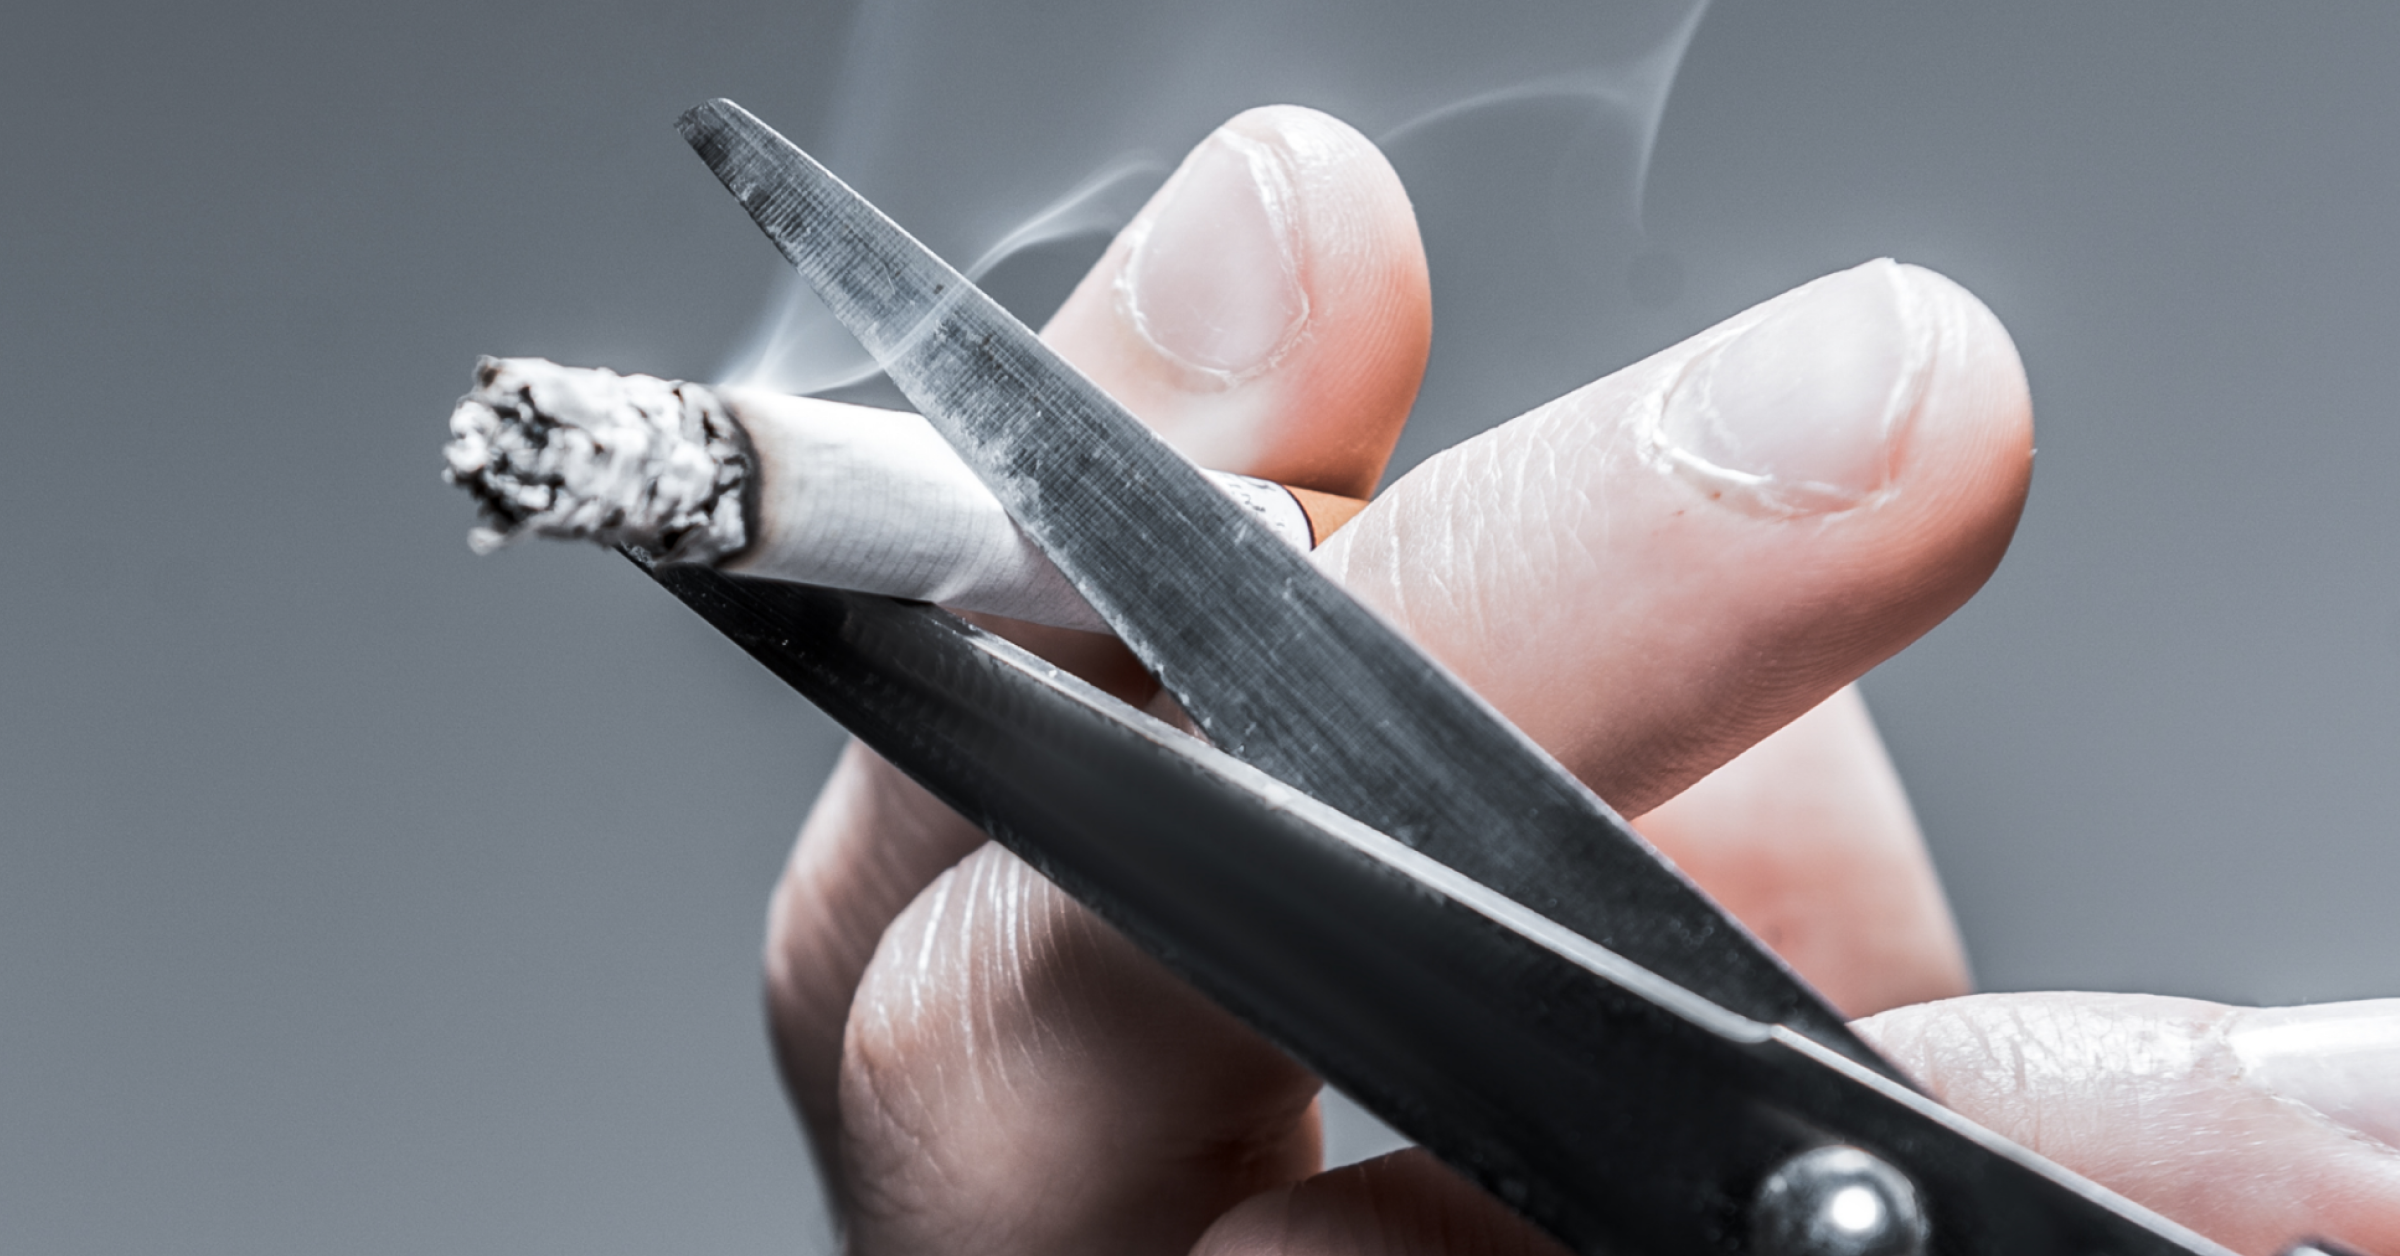 Eine brennende Zigarette wird mit einer Schere zerschnitten. Rauchen aufgeben im AMBOSS-Blog.